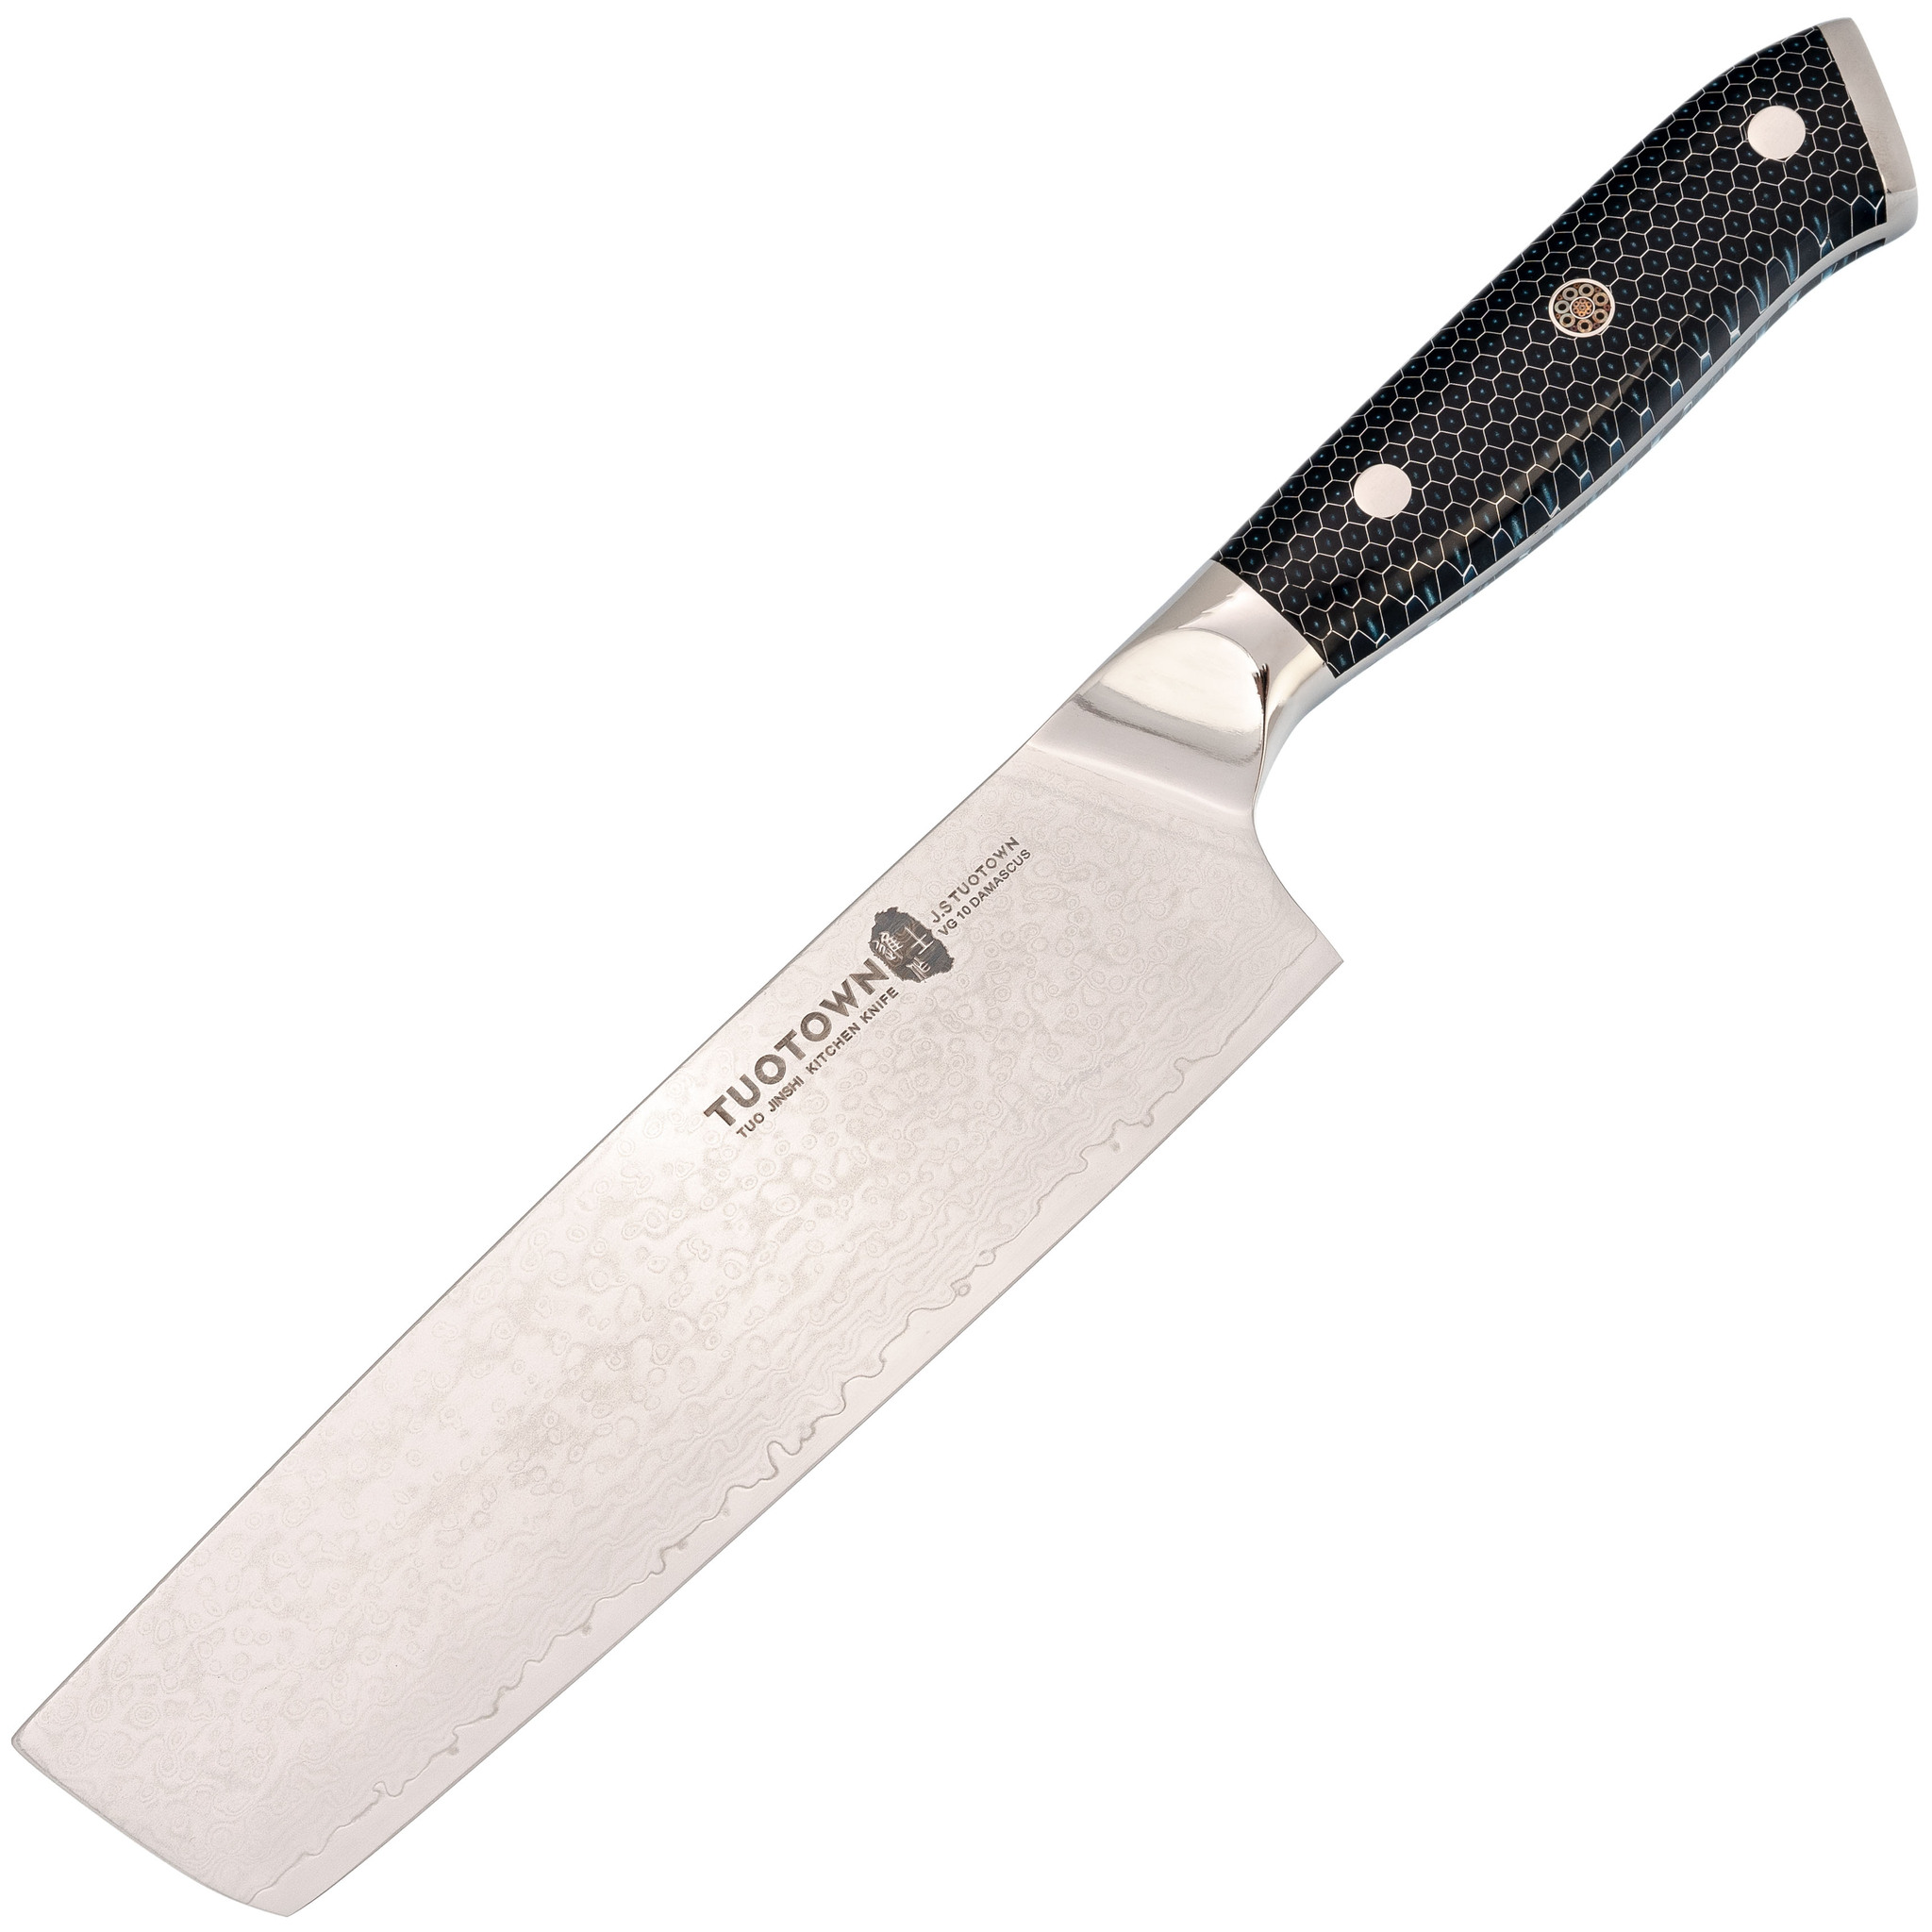 Кухонный нож Накири Tuotown, сталь VG10, обкладка Damascus, рукоять акрил, синий